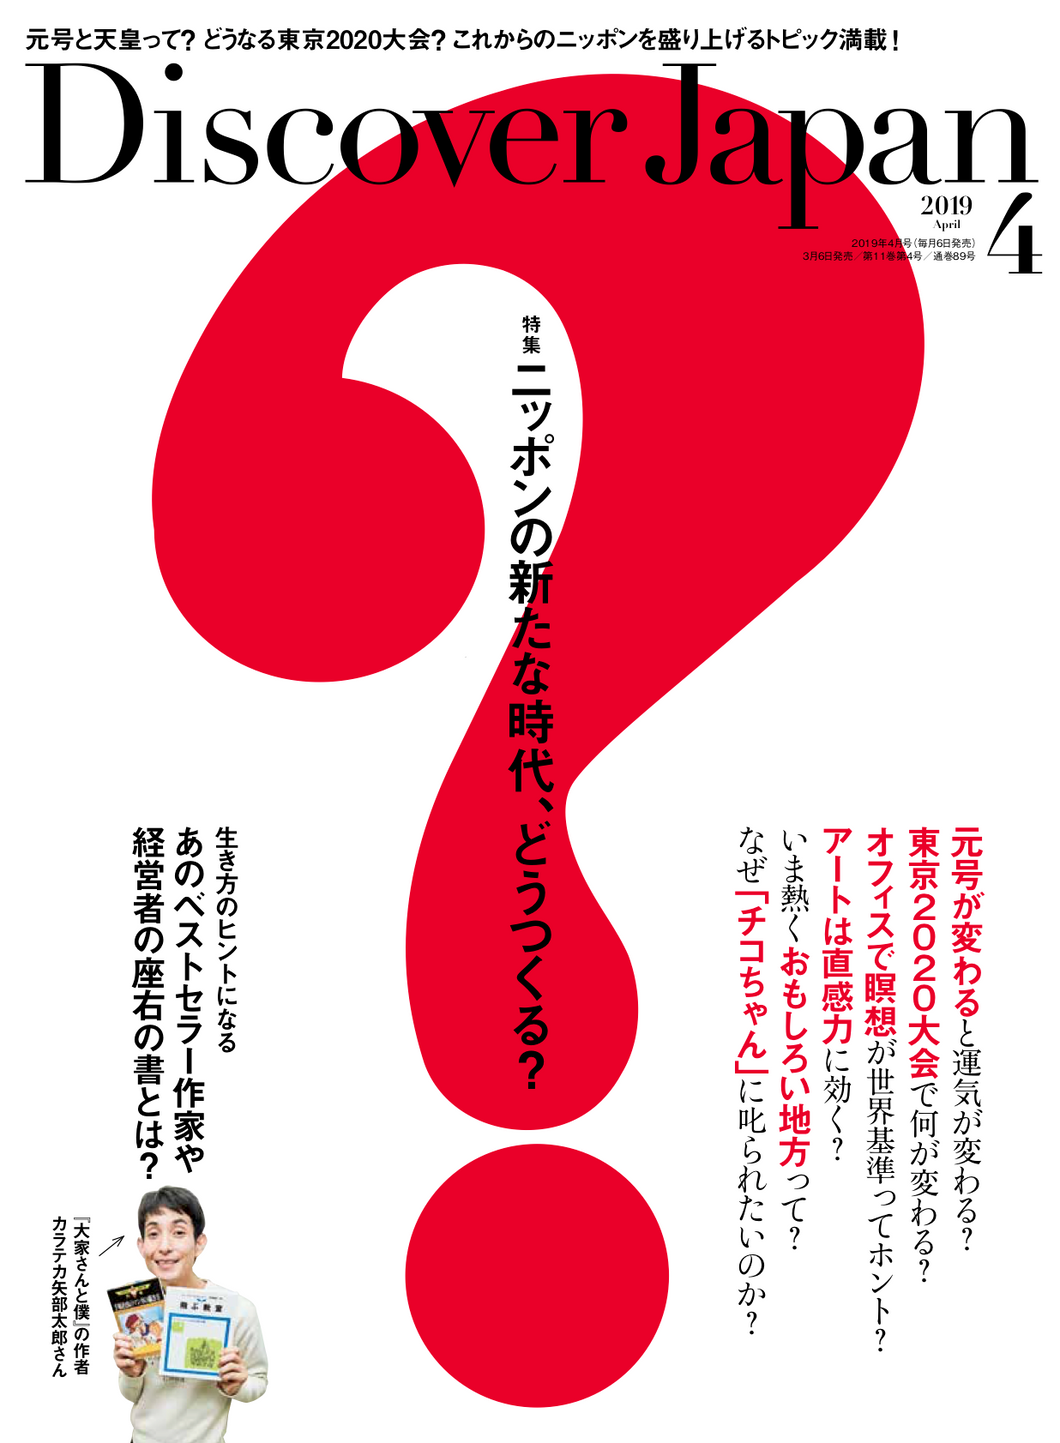 Discover Japan 2019年4月号「ニッポンの新たな時代、どうつくる？」- 2019/3/6発売